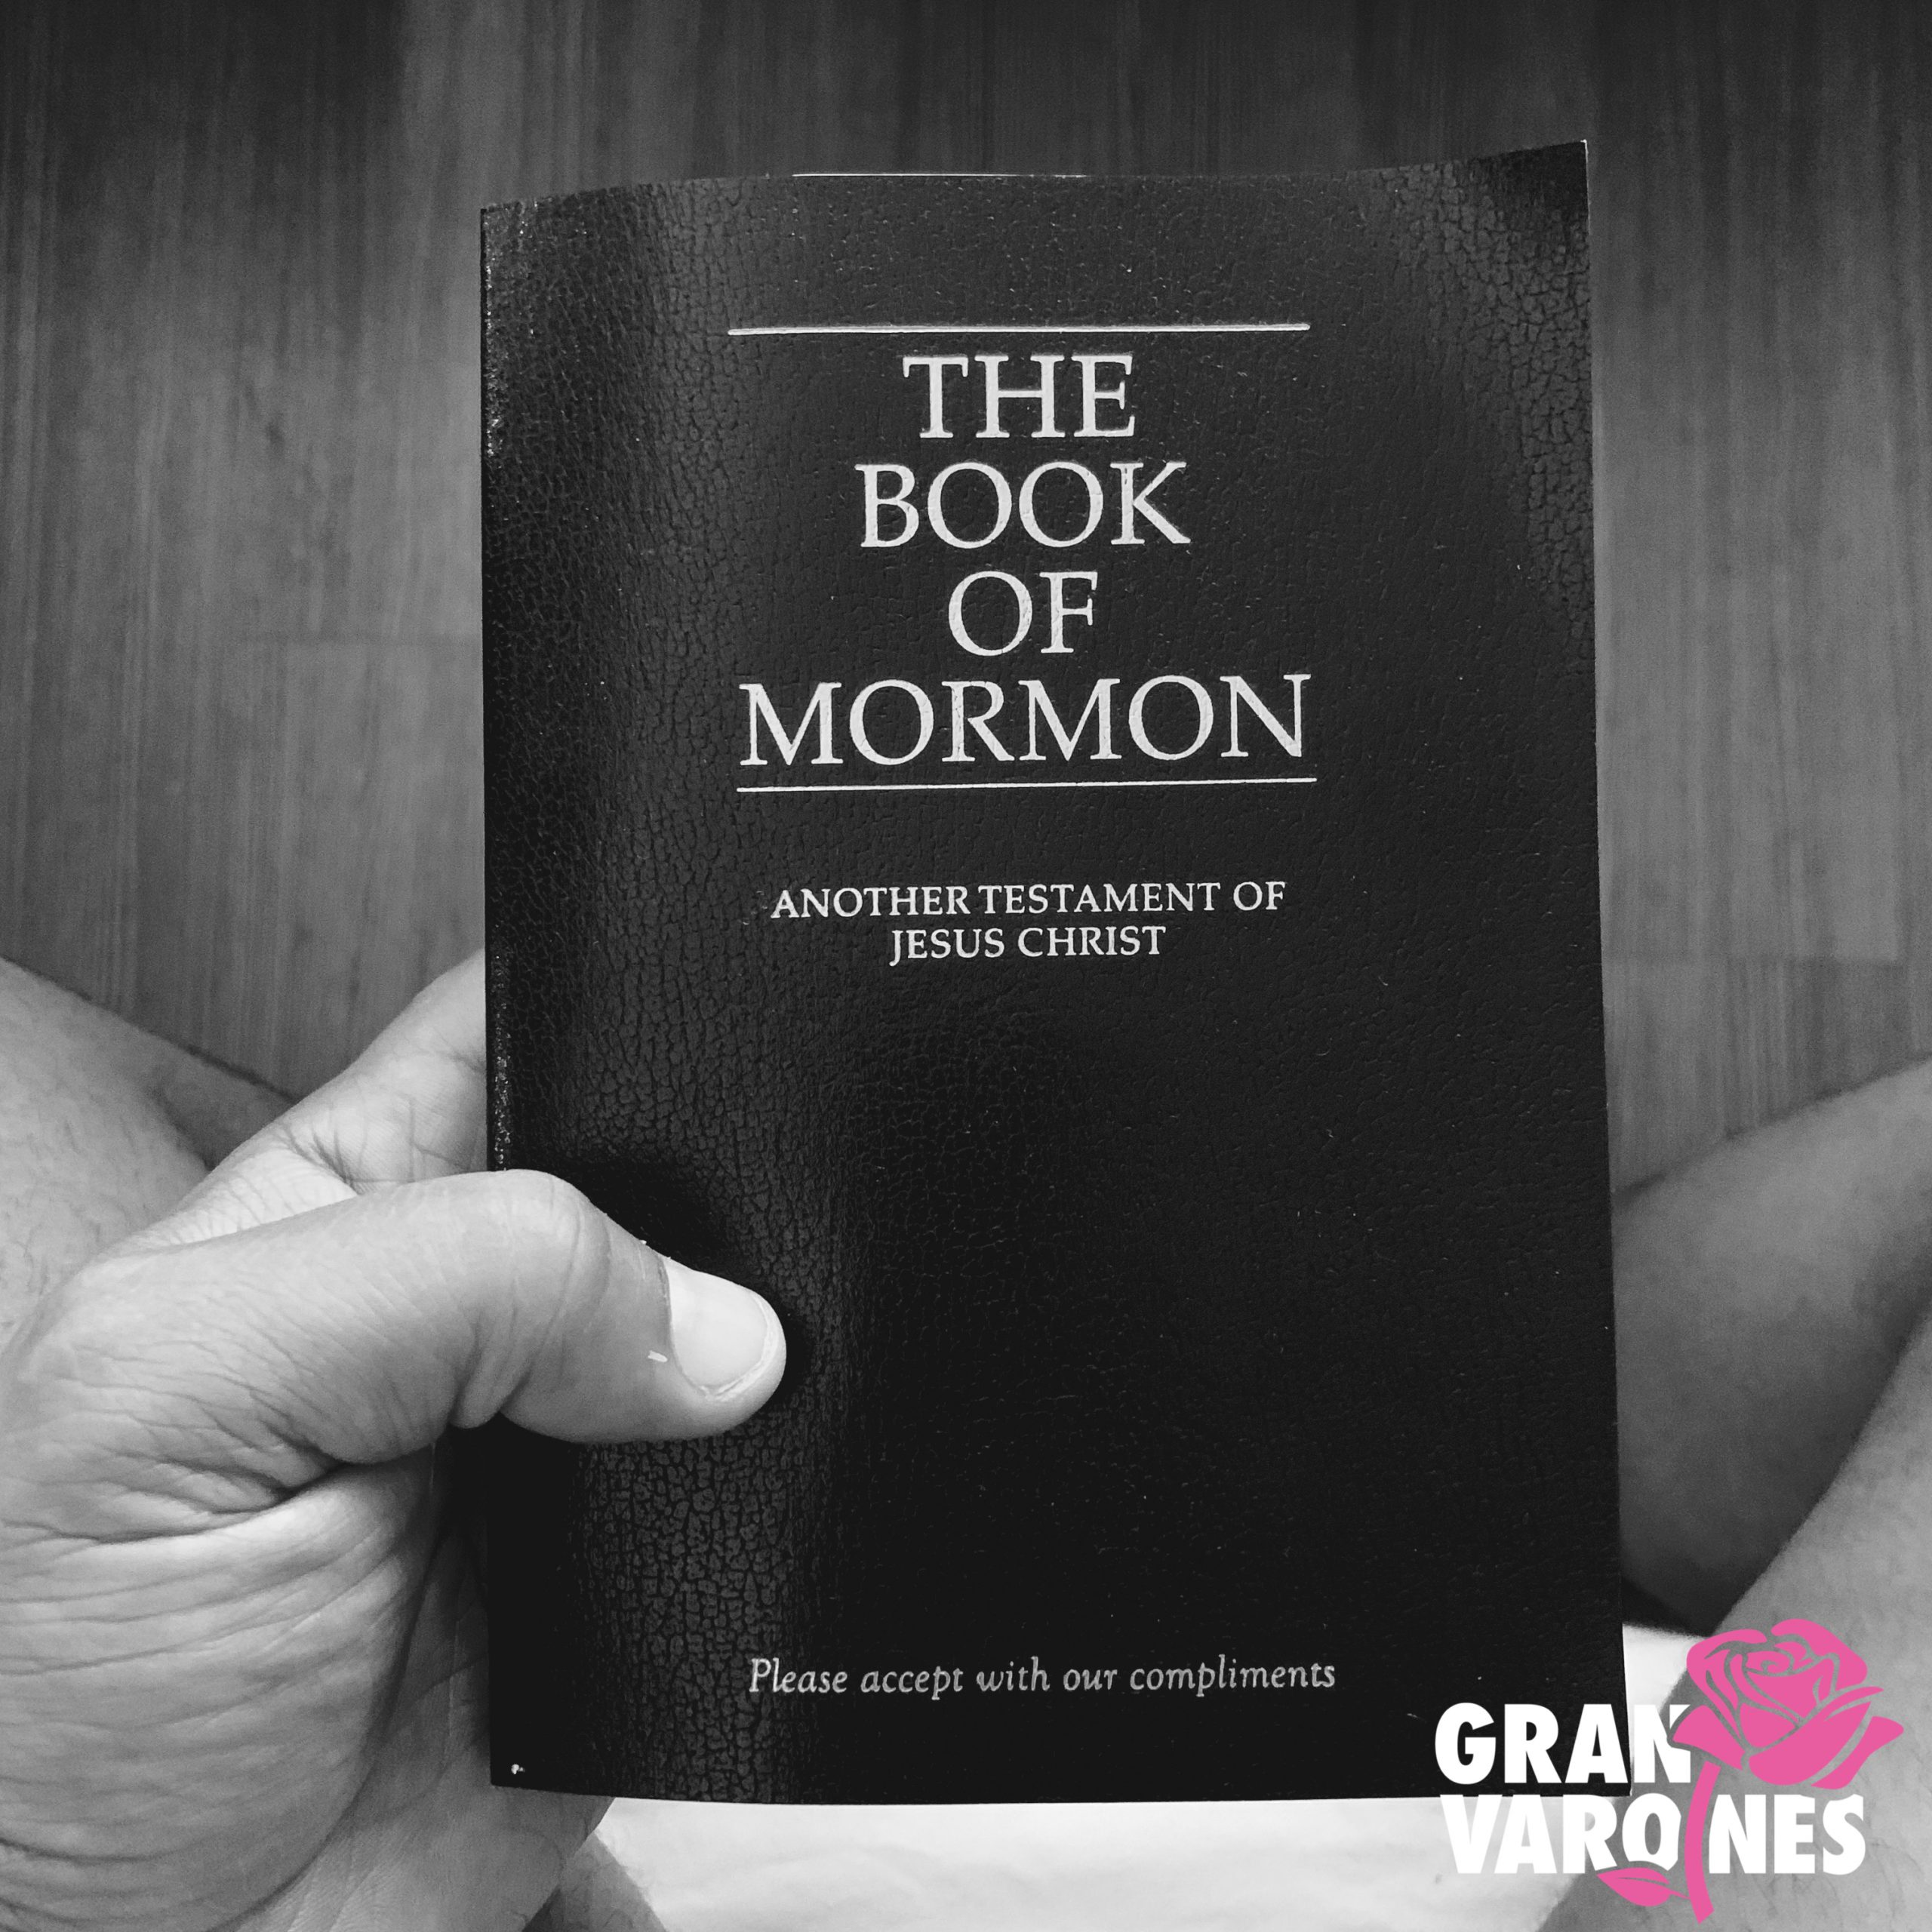 My Mormon Journey